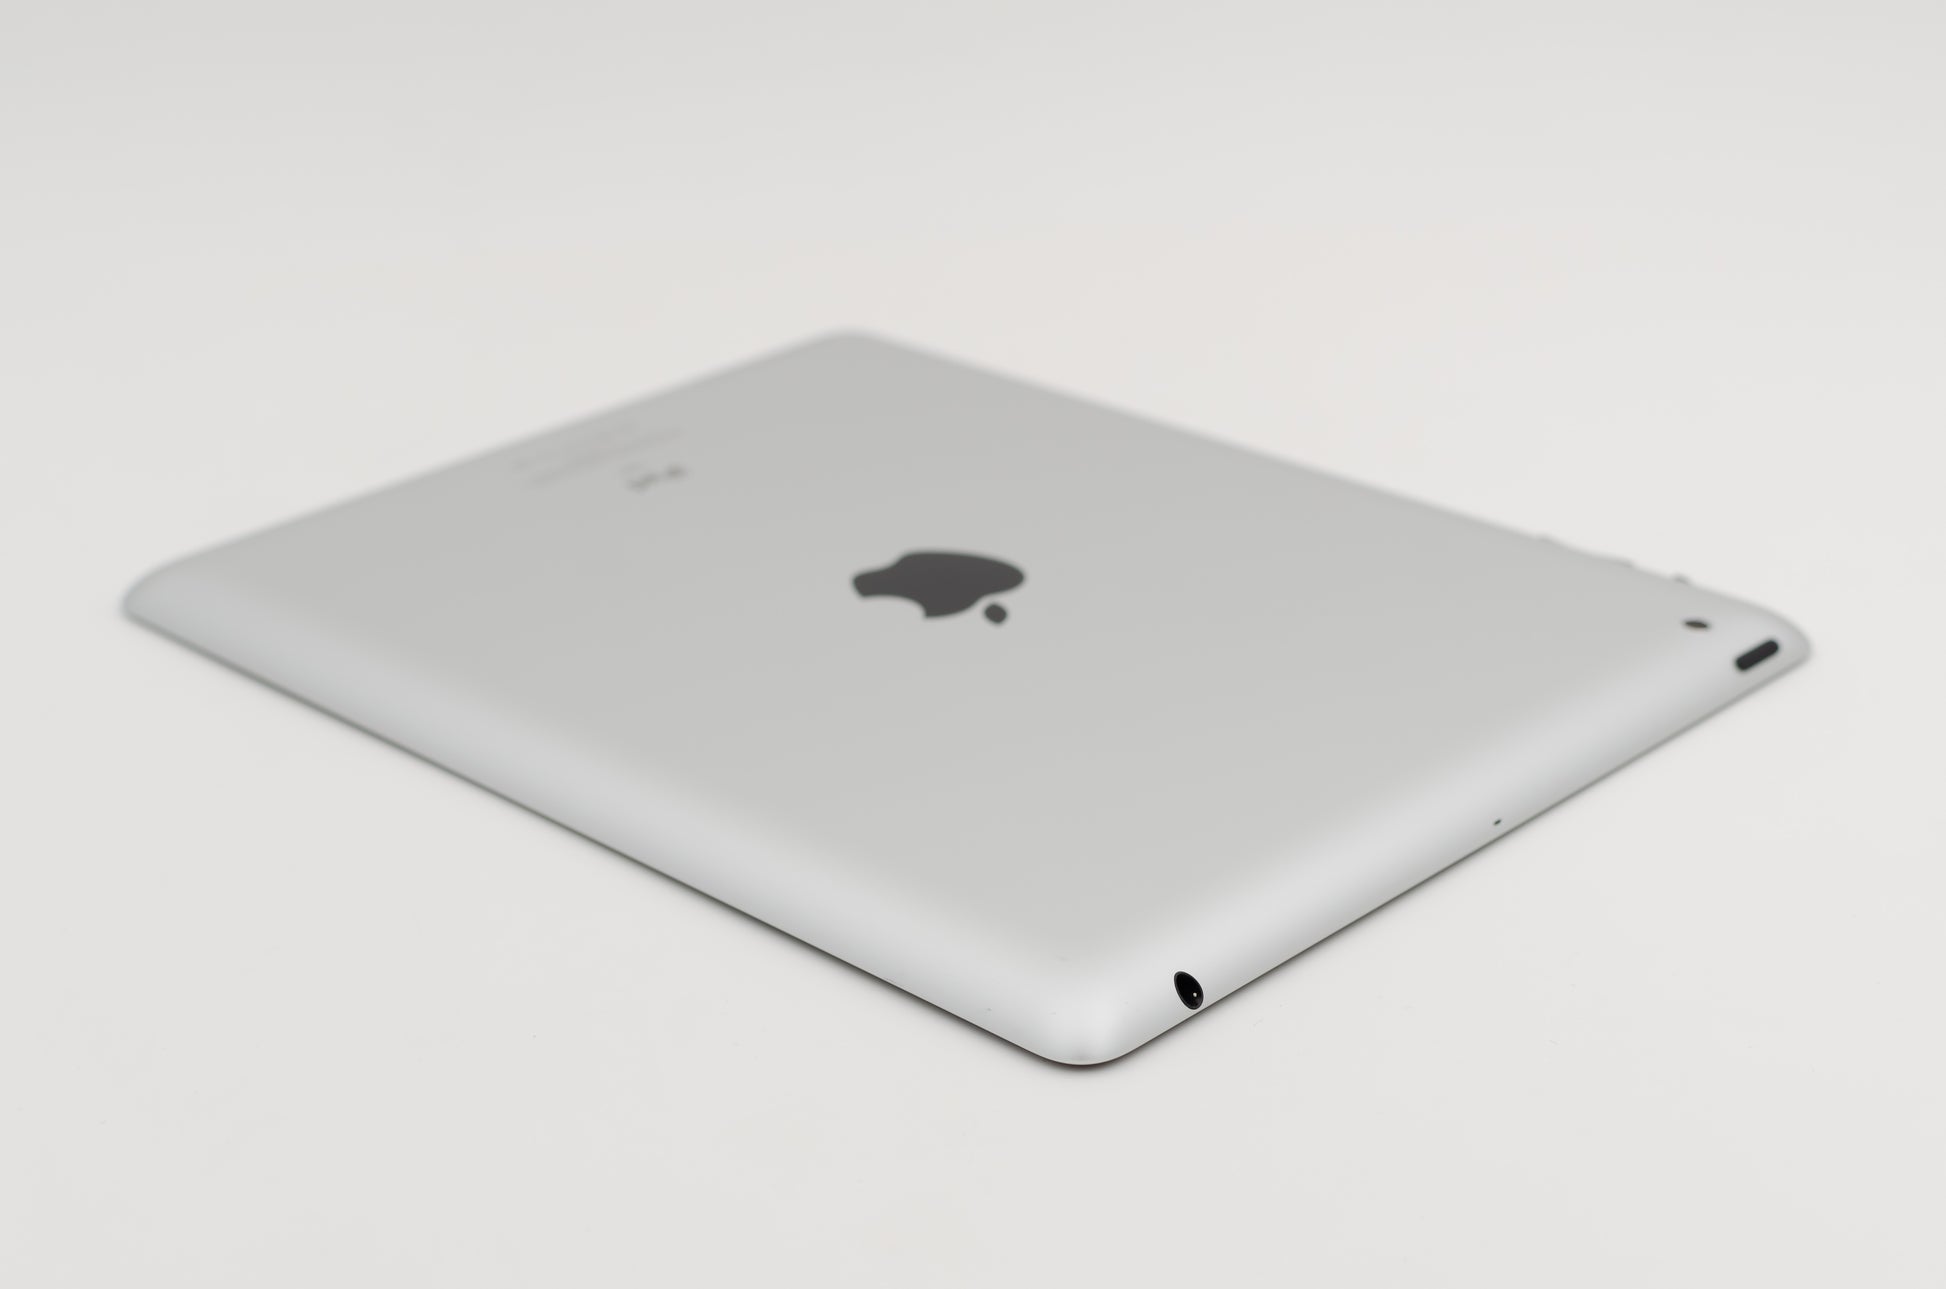 apple-2011-9.7-inch-ipad-2-a1397-silver/black-3